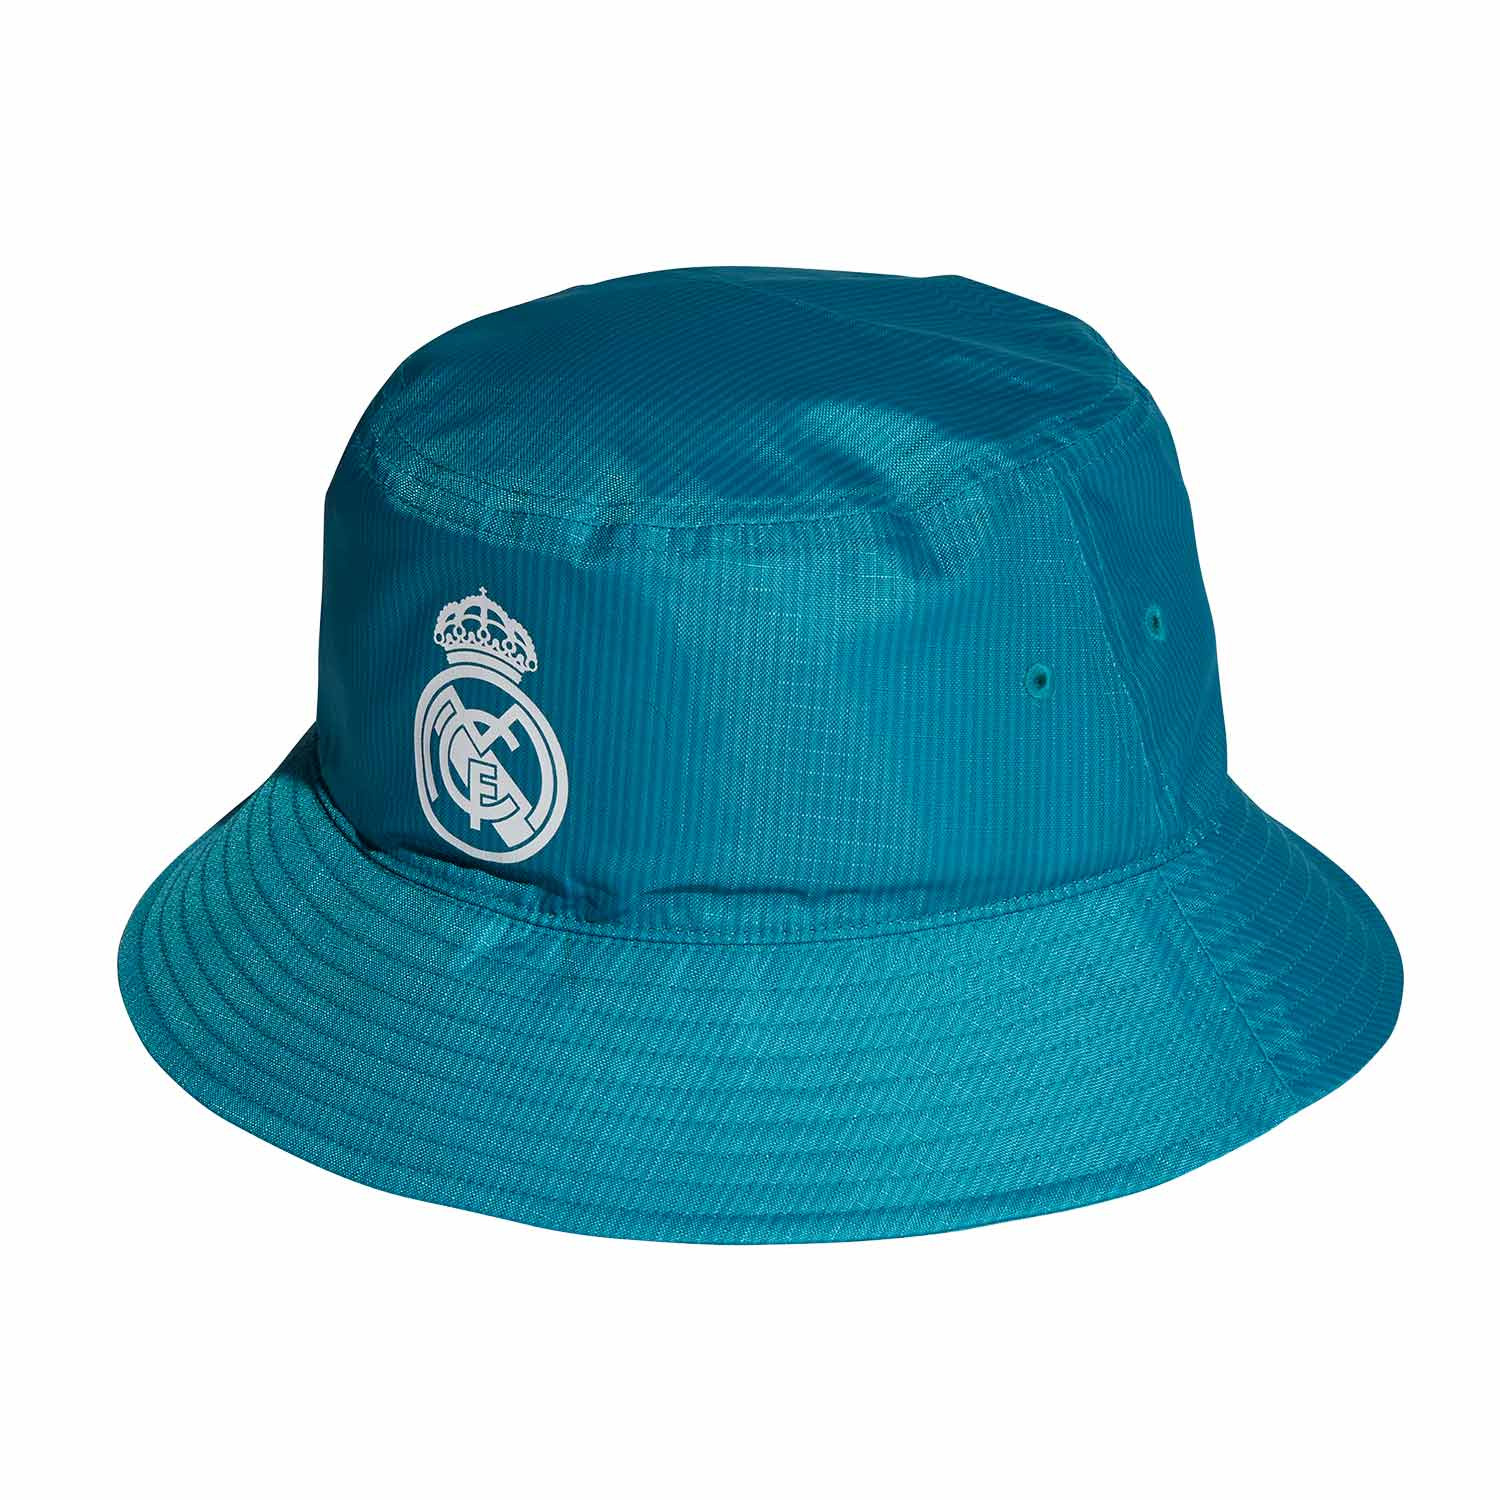 Sombrero adidas Real Madrid verde futbolmania